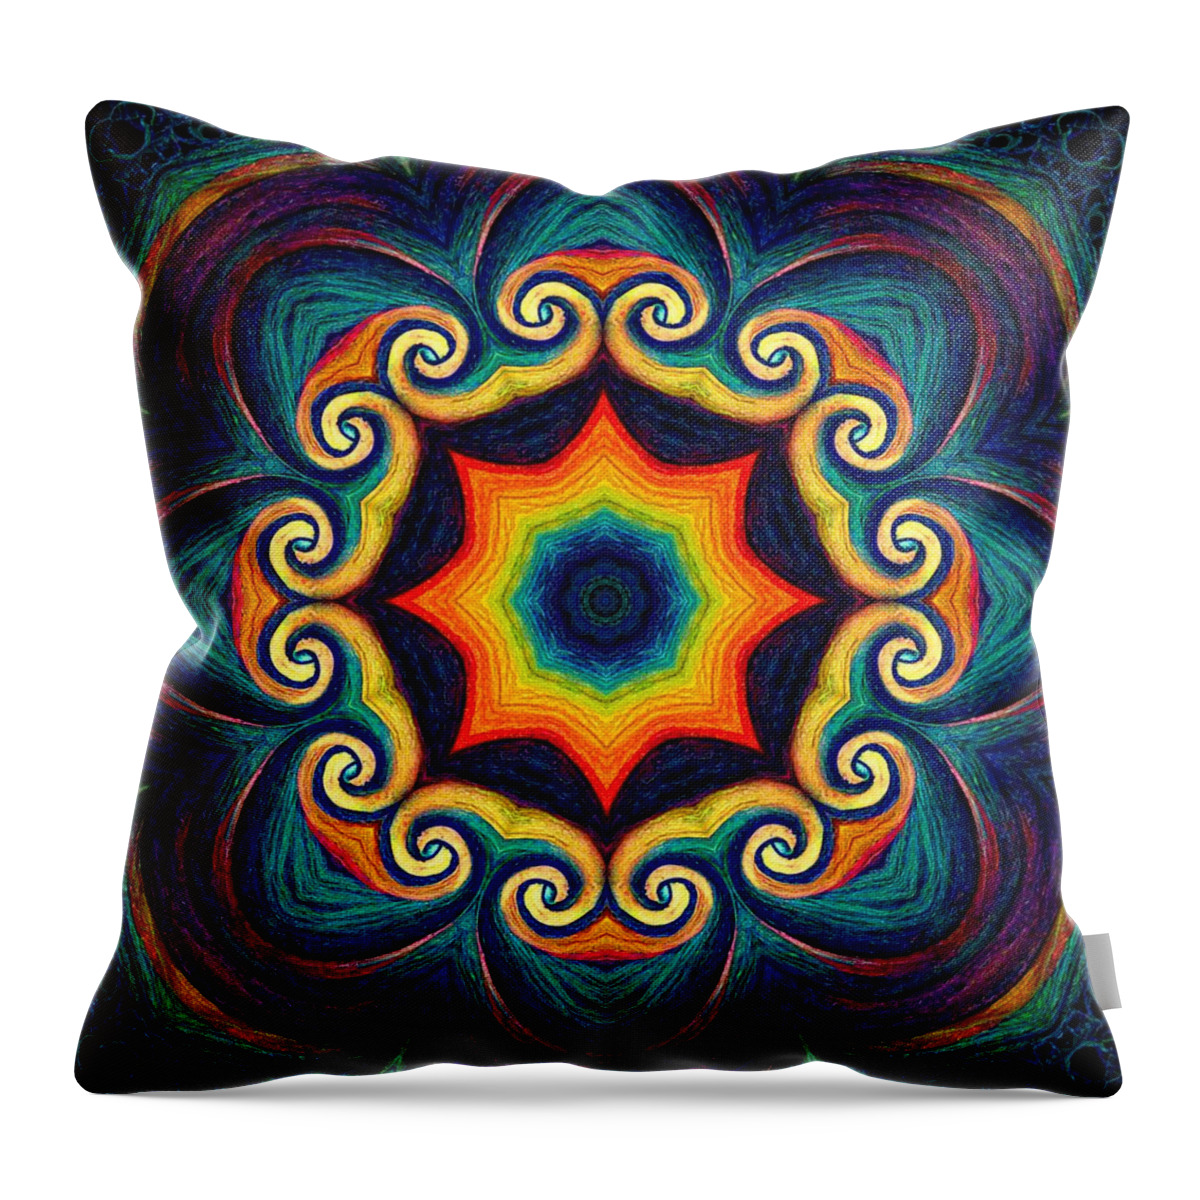 Mandala Throw Pillow featuring the digital art Soul Mandala by Beth Venner